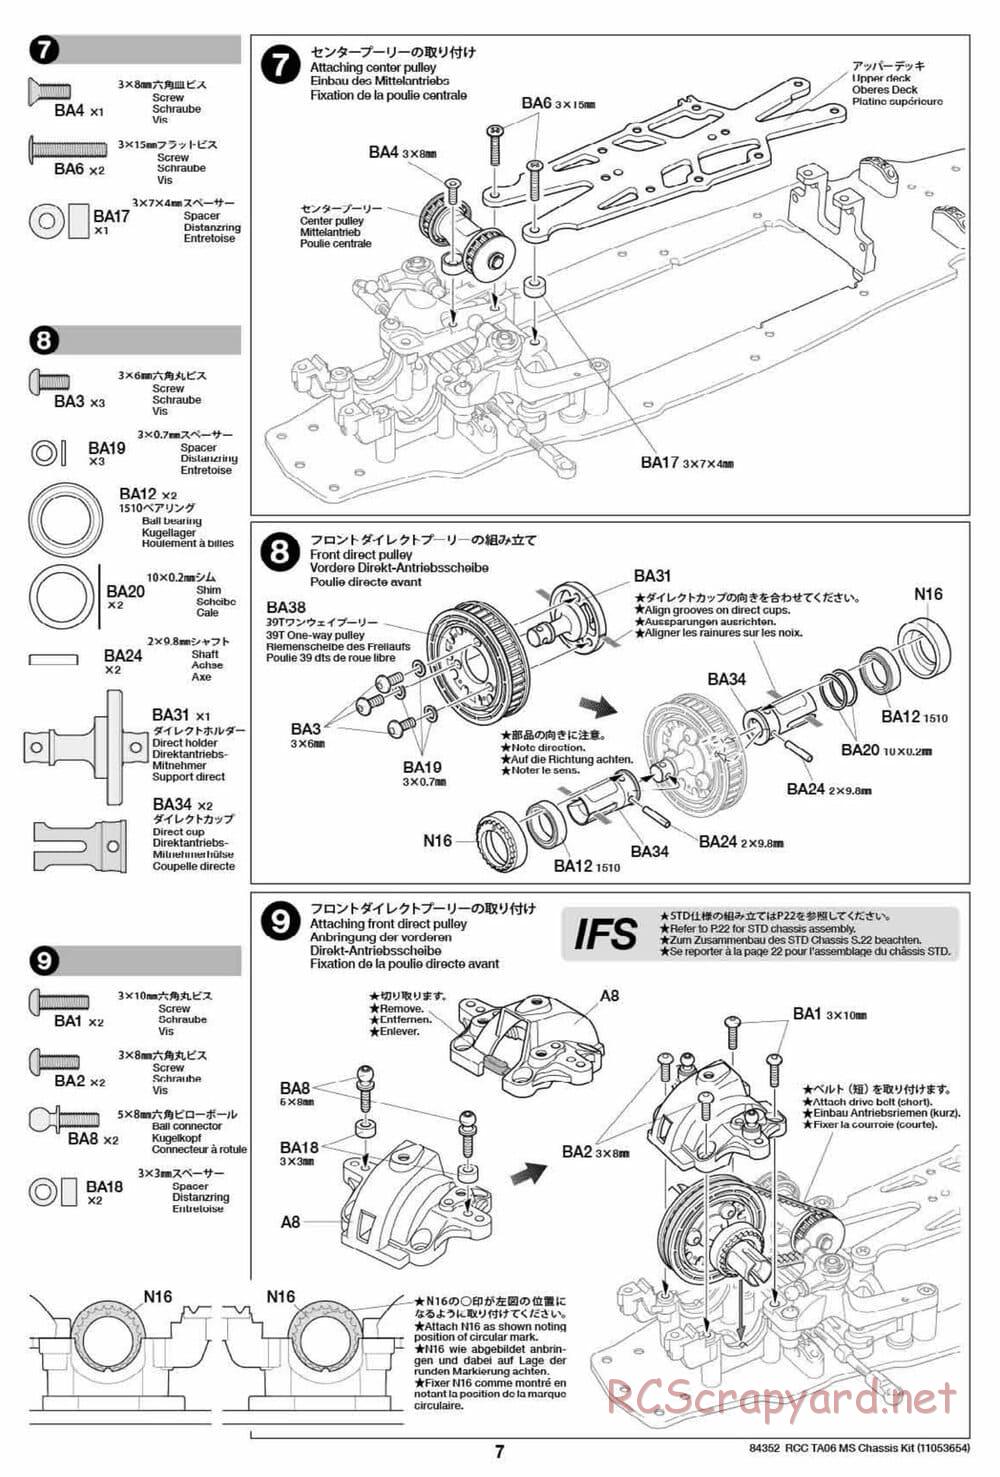 Tamiya - TA06 MS Chassis - Manual - Page 7